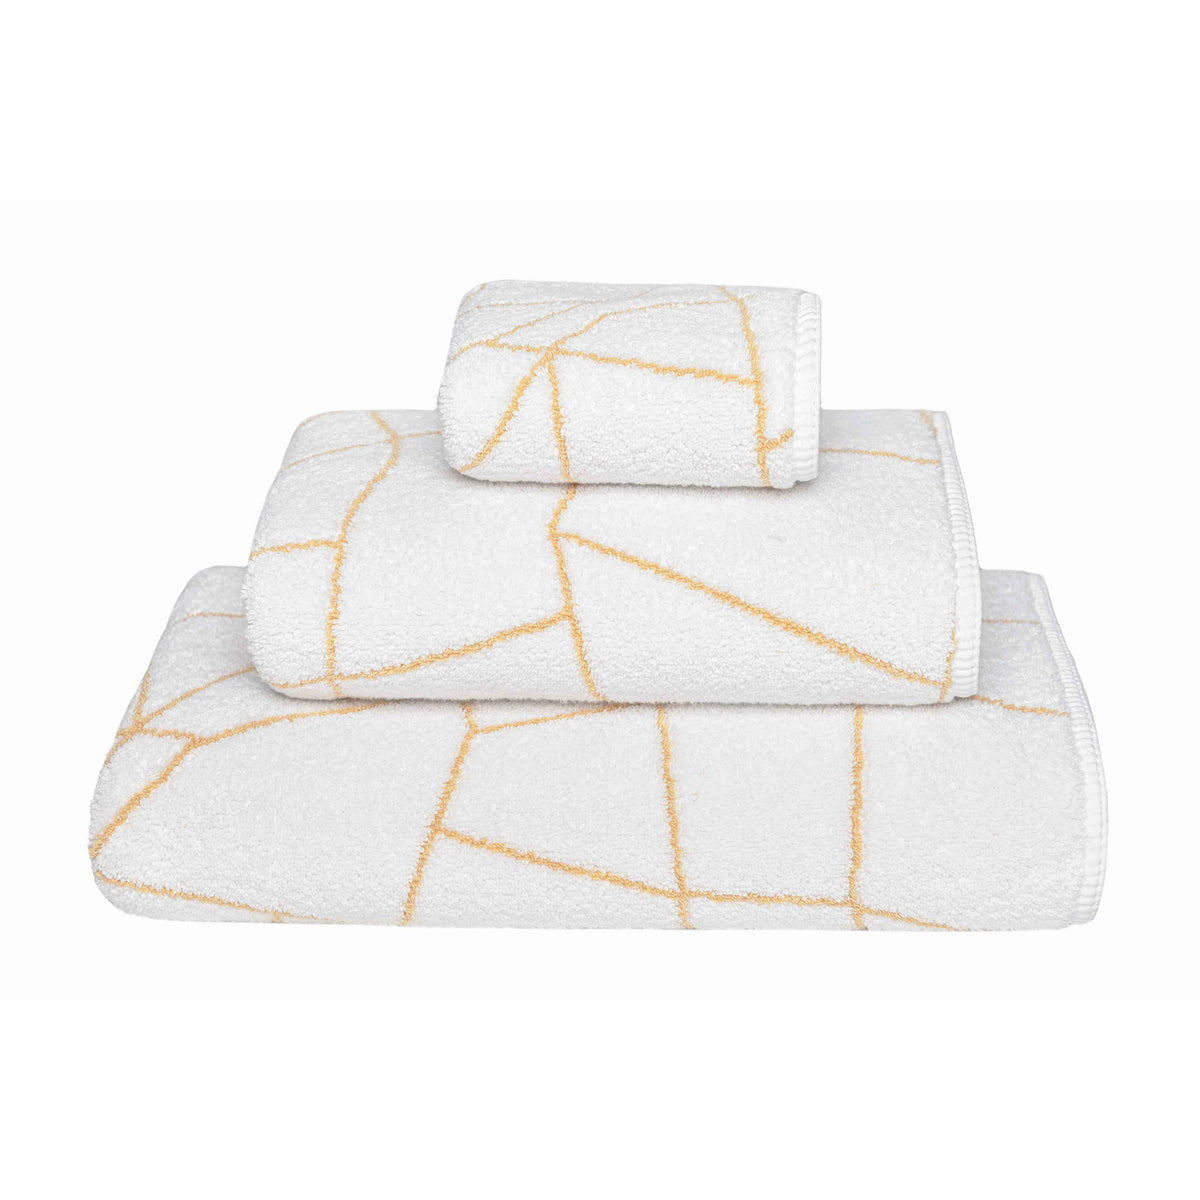 Graccioza Amalia Bath Towels and Rugs Stack White/Gold Fine Linens